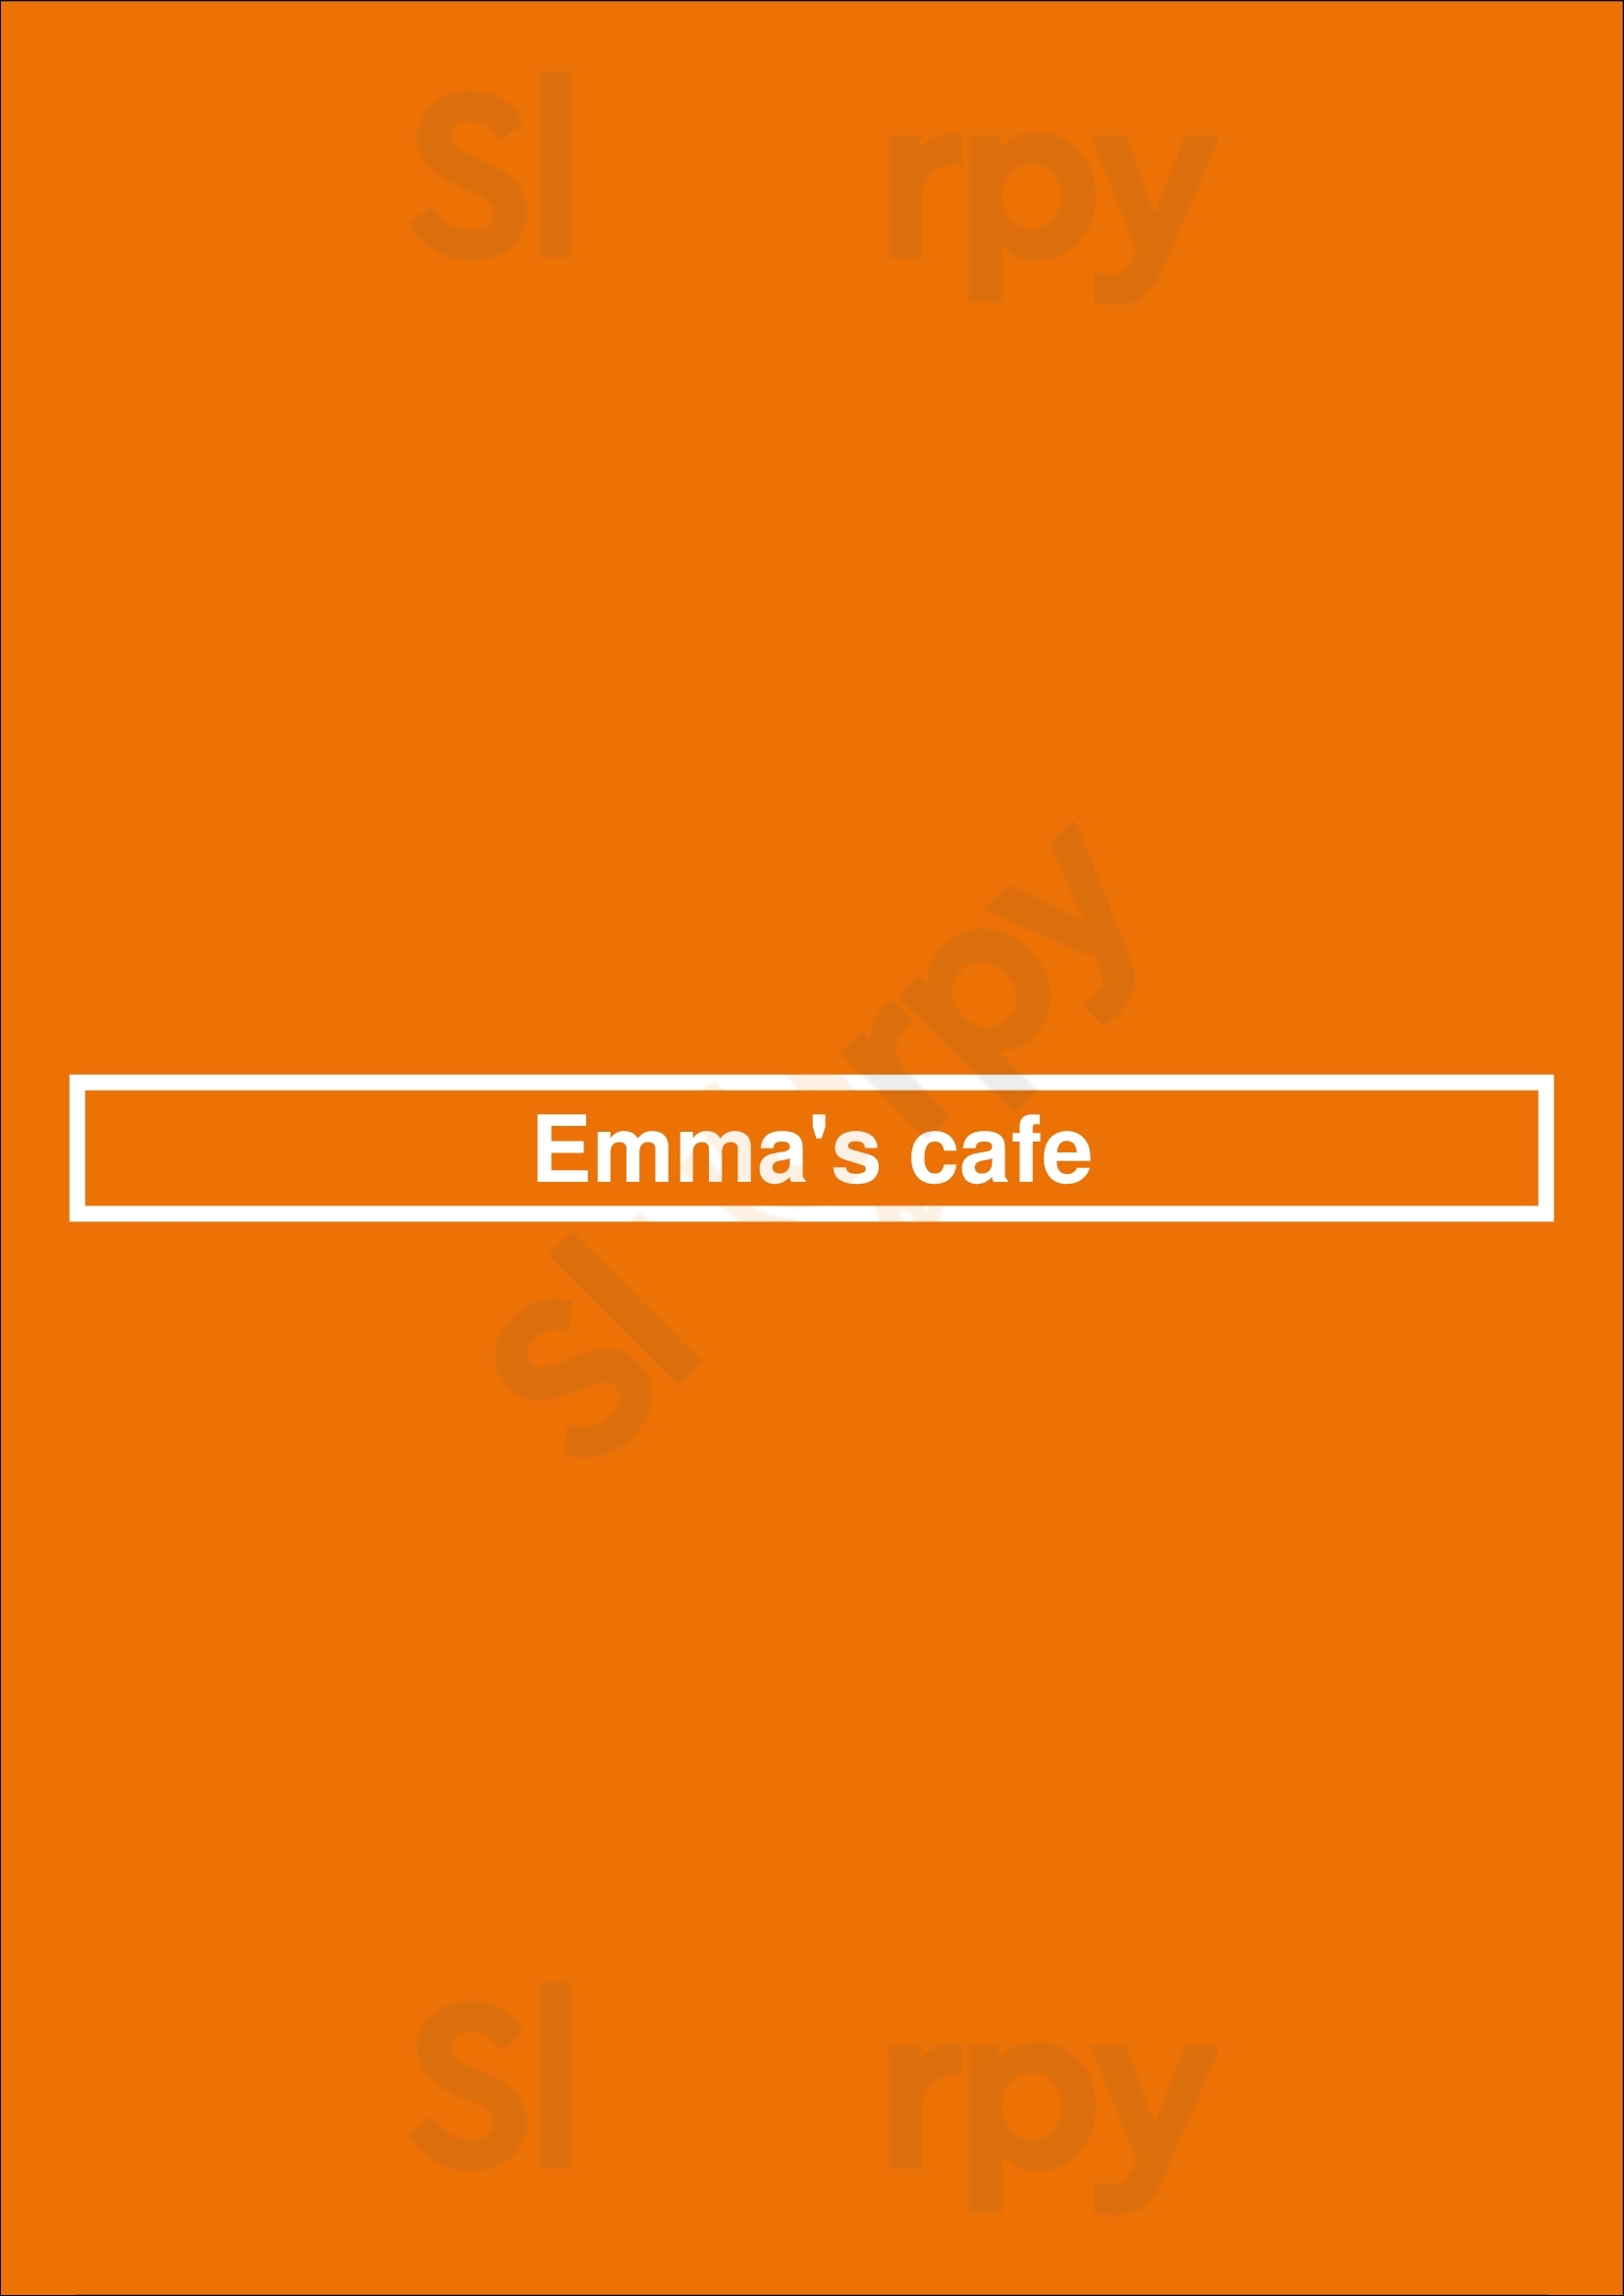 Emma's Cafe Manchester Menu - 1